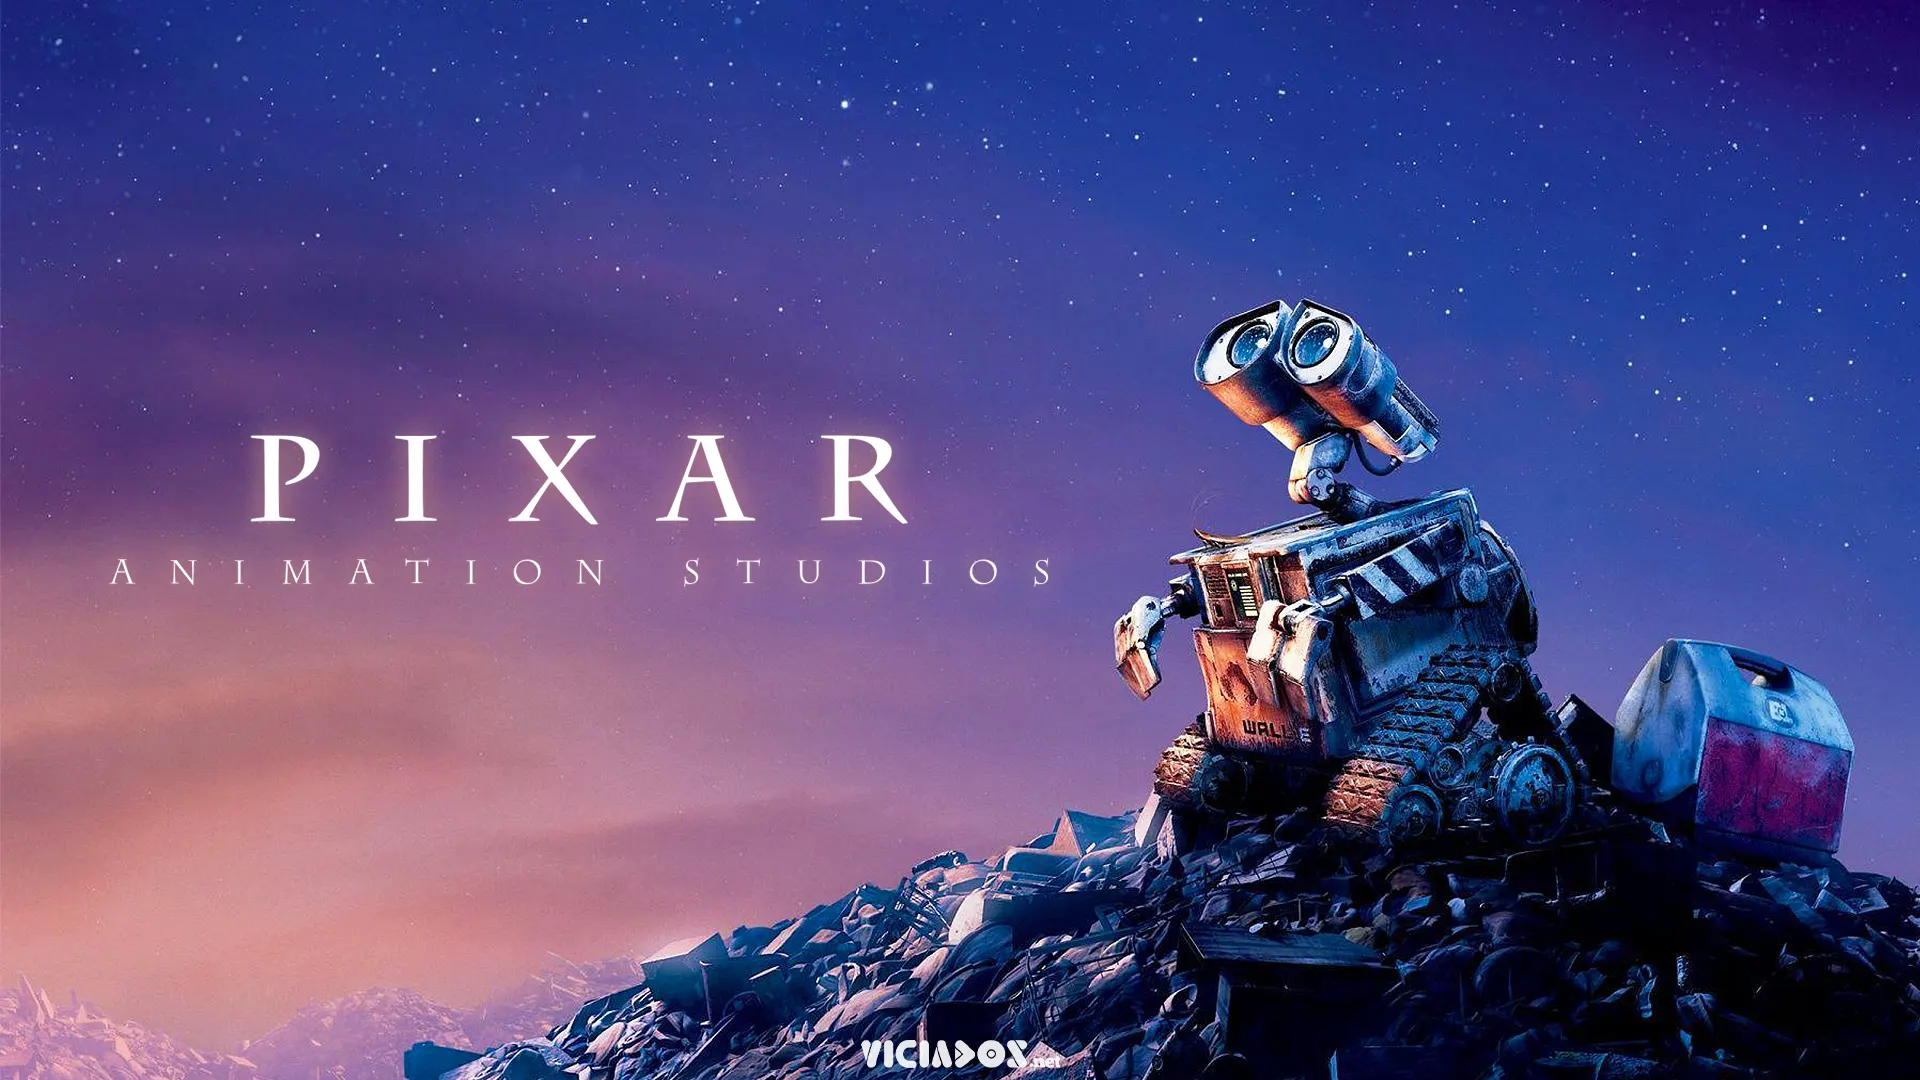 Conheça os 5 filmes mais aclamados da Pixar de acordo com as notas do Metacritic 1